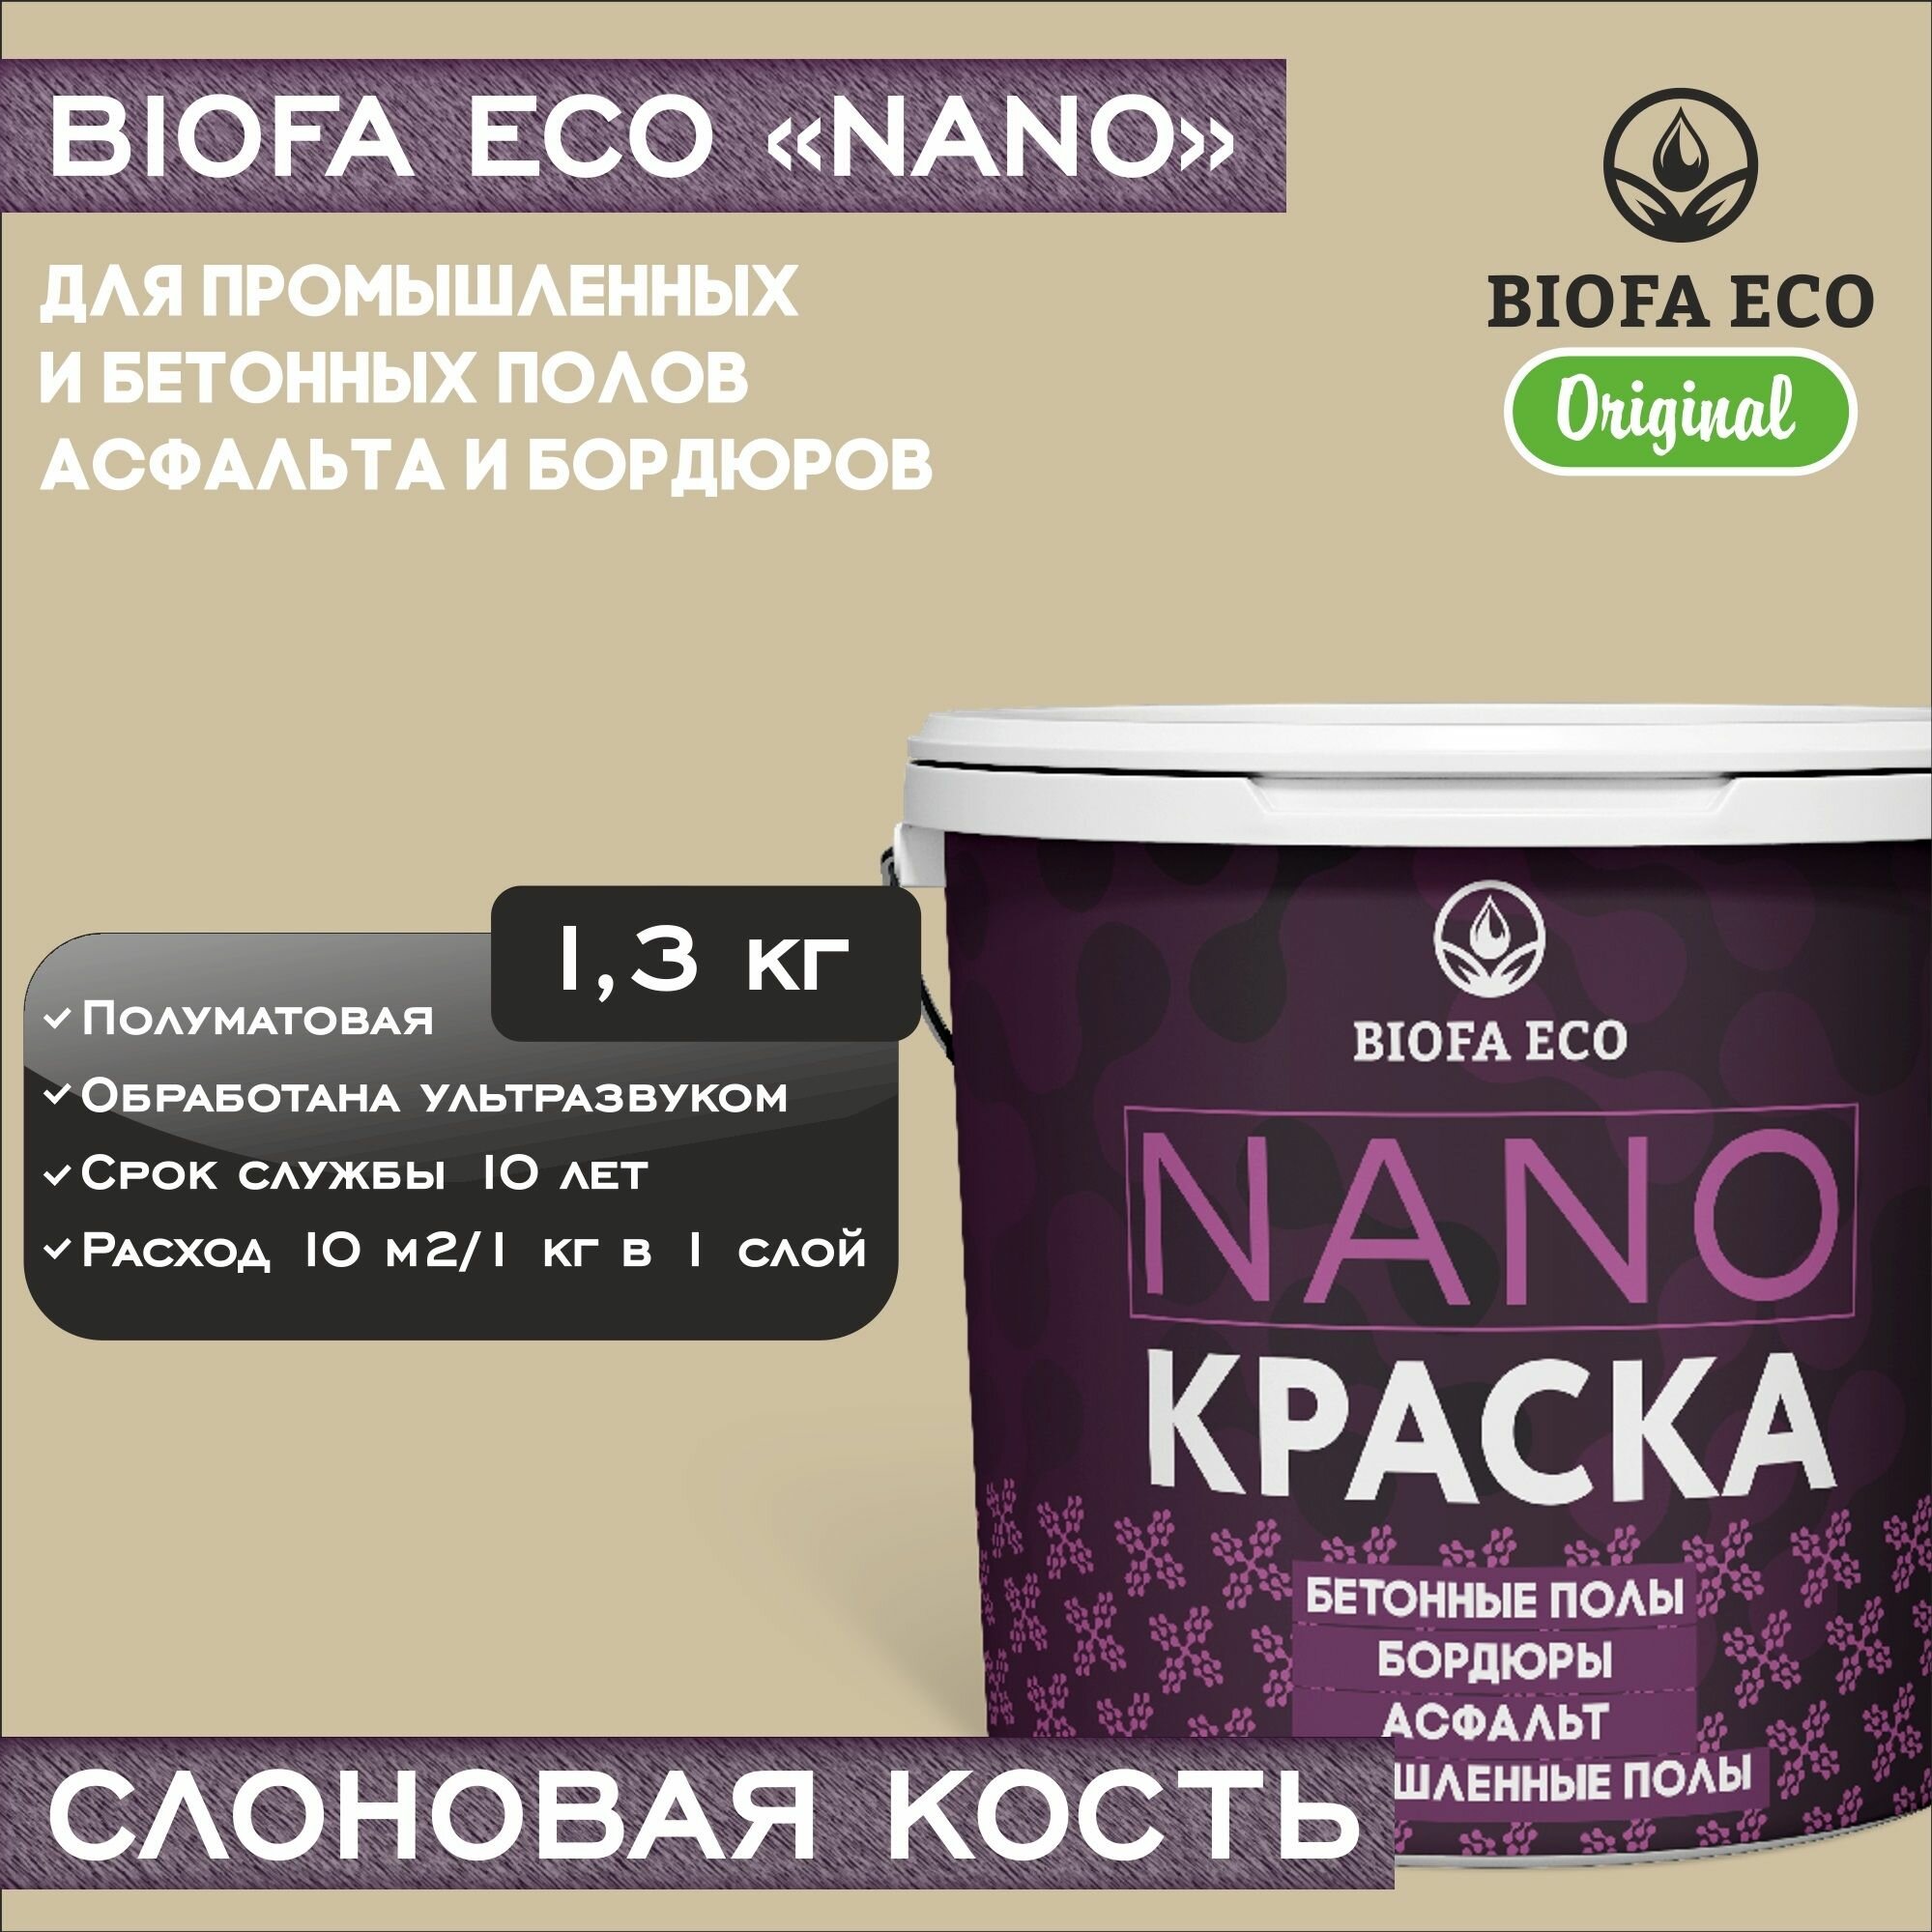 Краска BIOFA ECO NANO для промышленных и бетонных полов, бордюров, асфальта, адгезионная, полуматовая, цвет слоновая кость, 1,3 кг